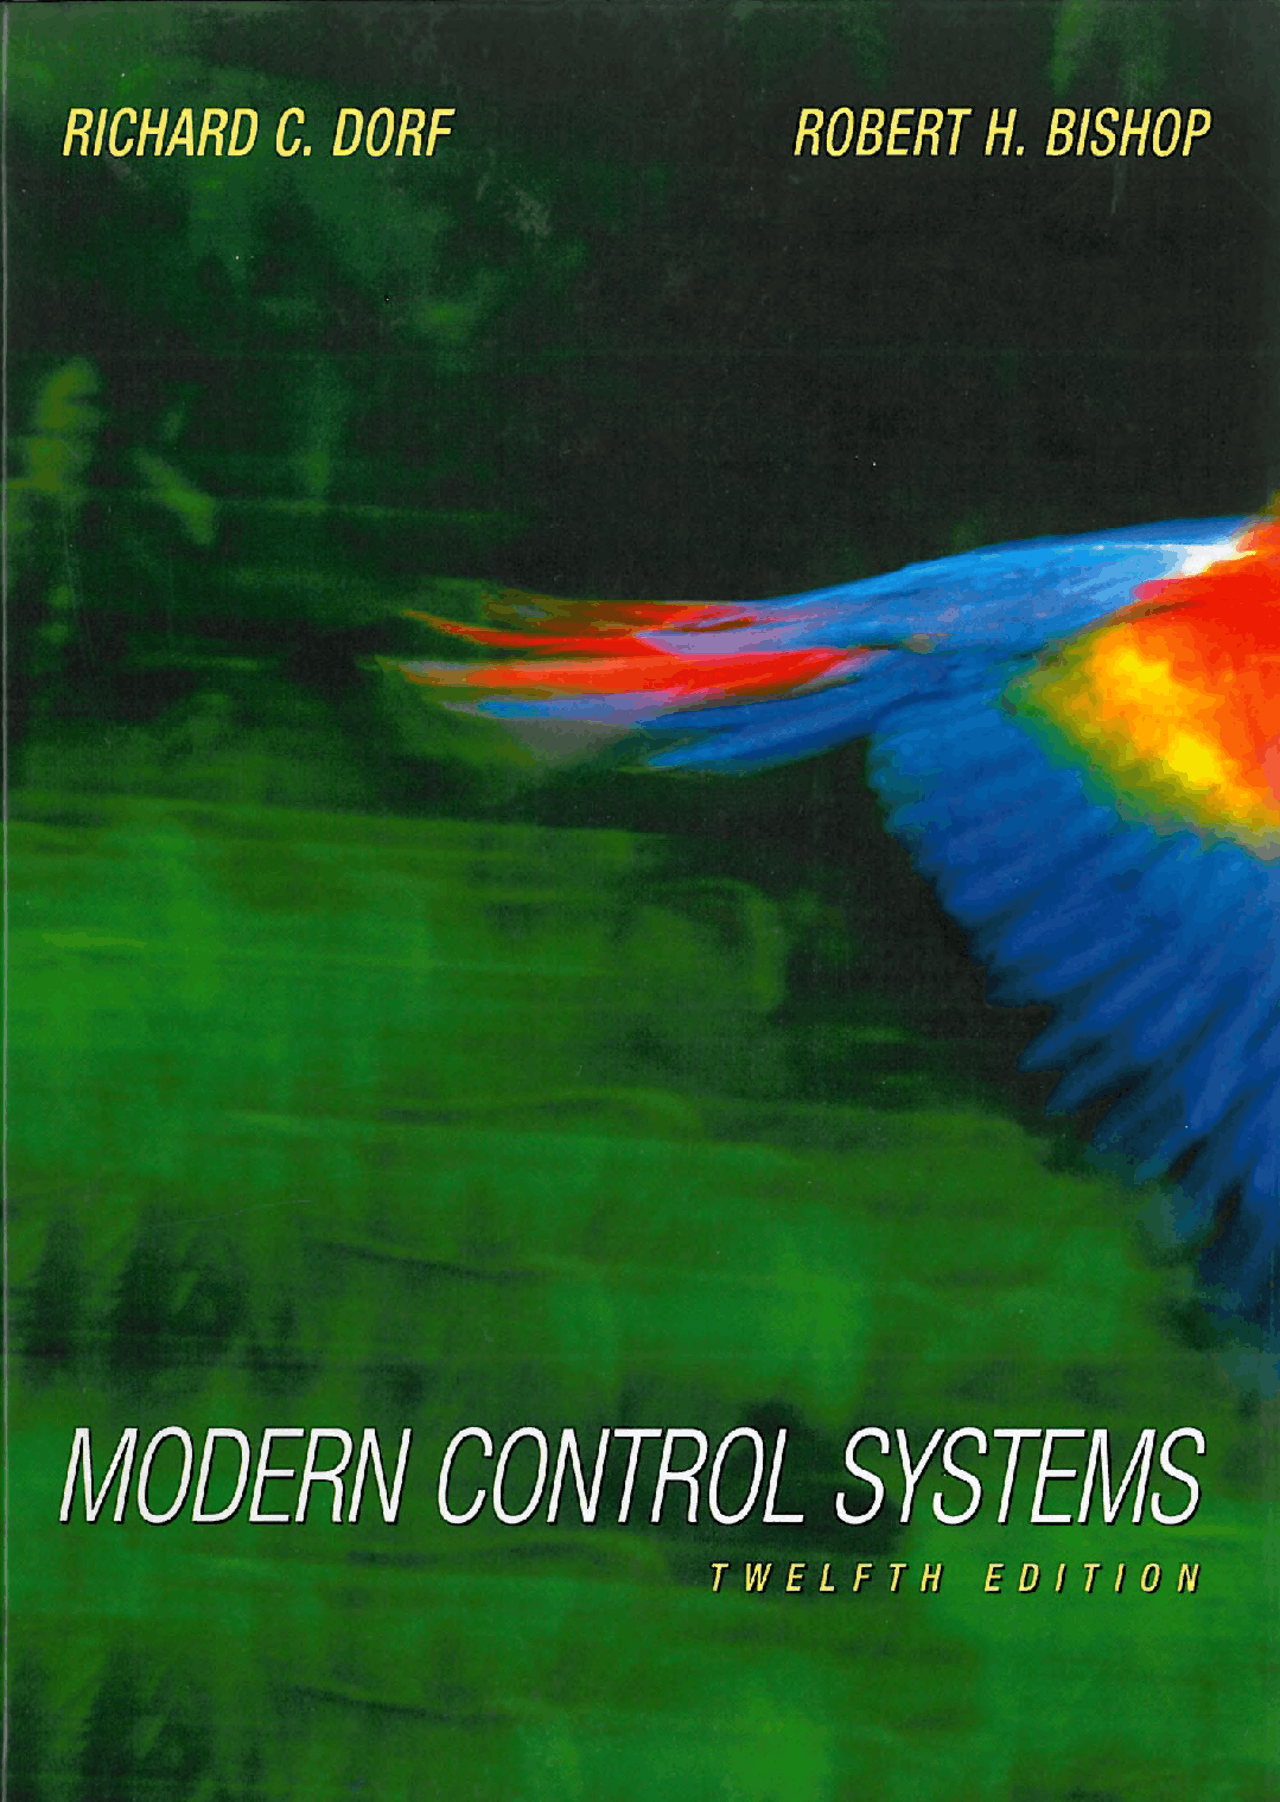 Modern Control Systems 12 Edition PDF